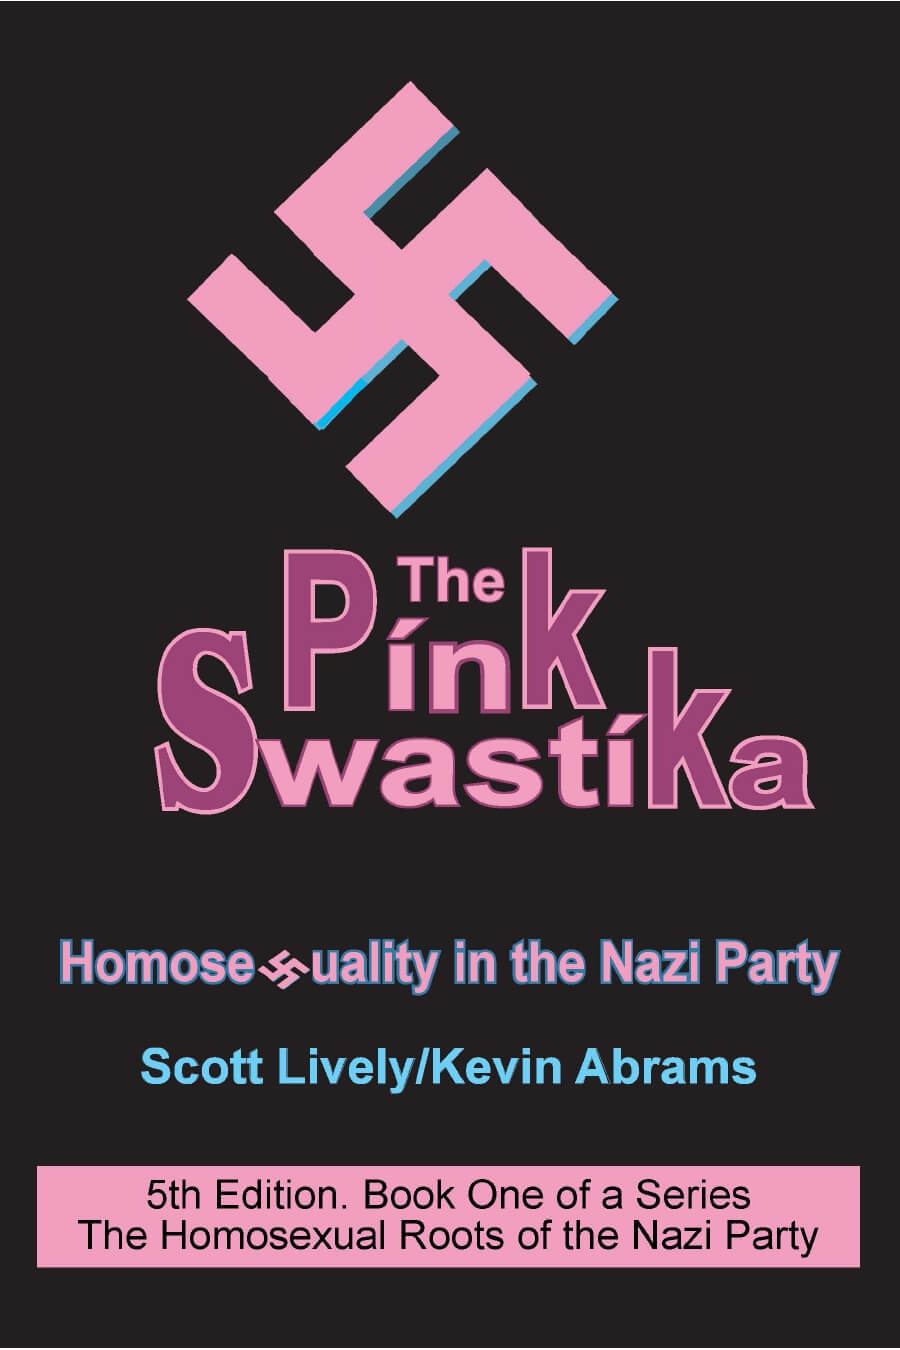 4 teorie del complotto divertentissime sulla comunità LGBTQ+ - The Pink Swastika cover 5th ed - Gay.it